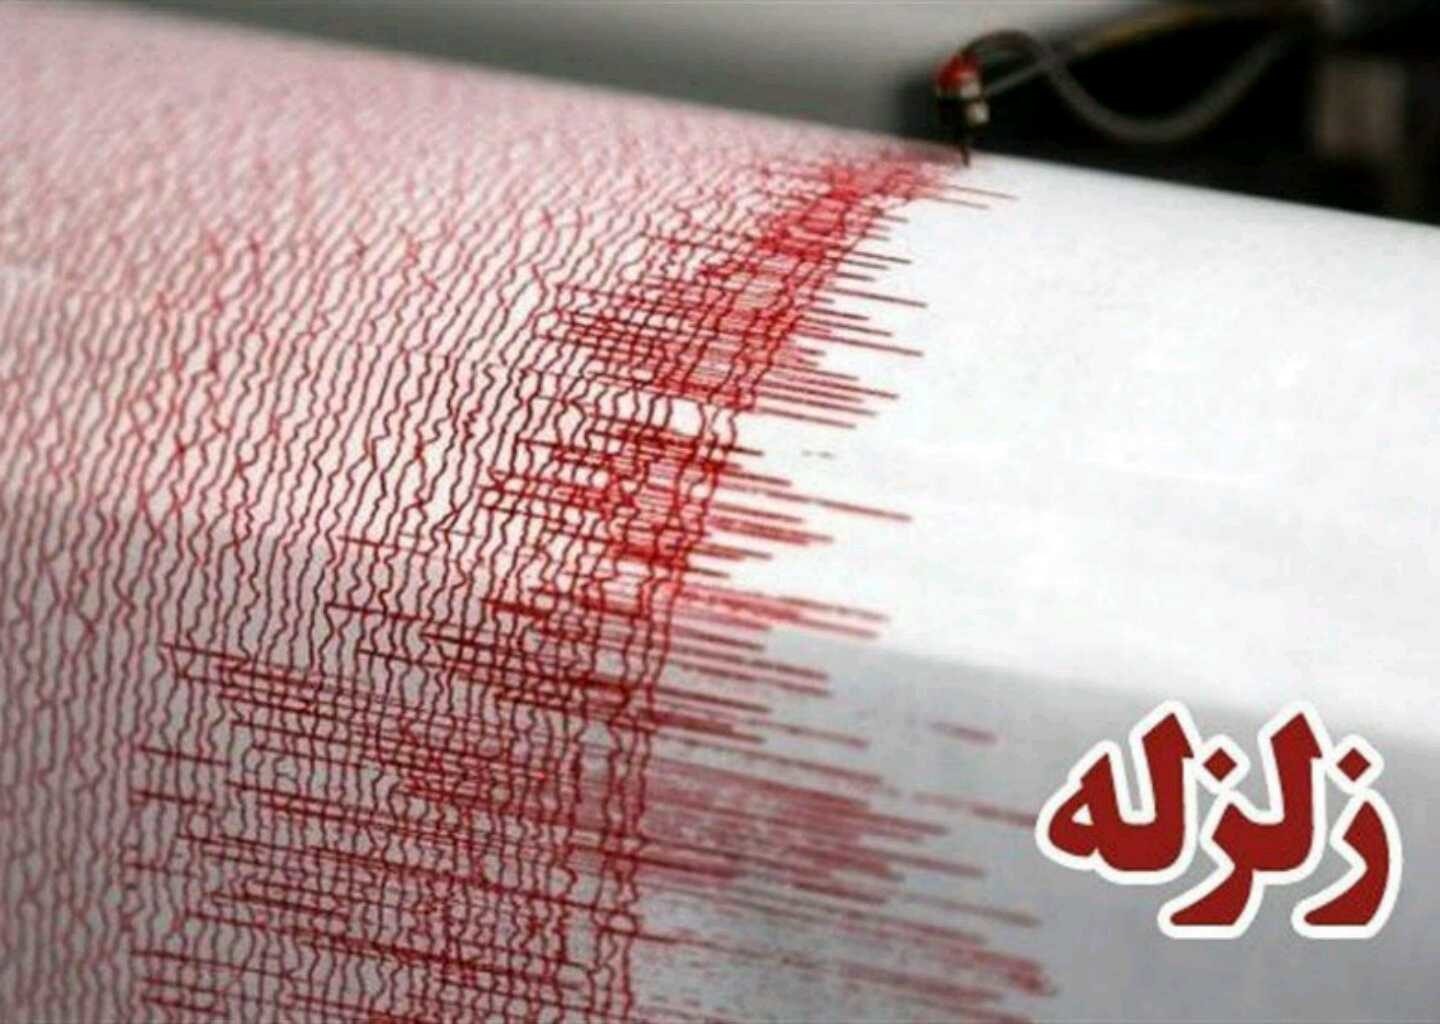 پیام مهم زلزله دیشب البرز؛ پس‌لرزه بودن!/ زلزله هفته پیش زلزله ‌اصلی‌ بود و نگرانی‌ها کمتر شد